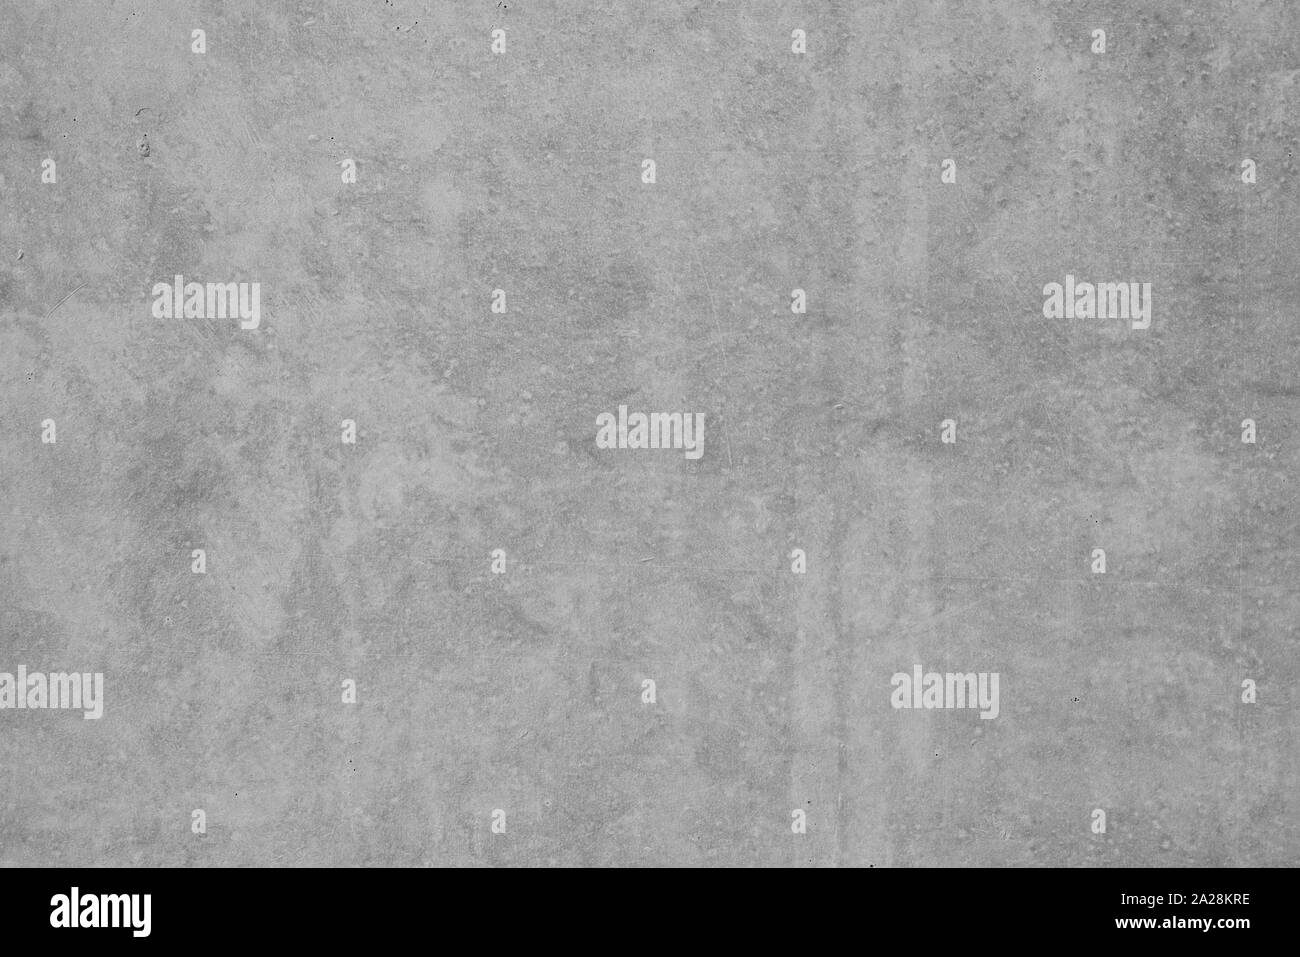 La texture della vecchia, grungy, grigio cemento o parete in cemento per lo sfondo Foto Stock